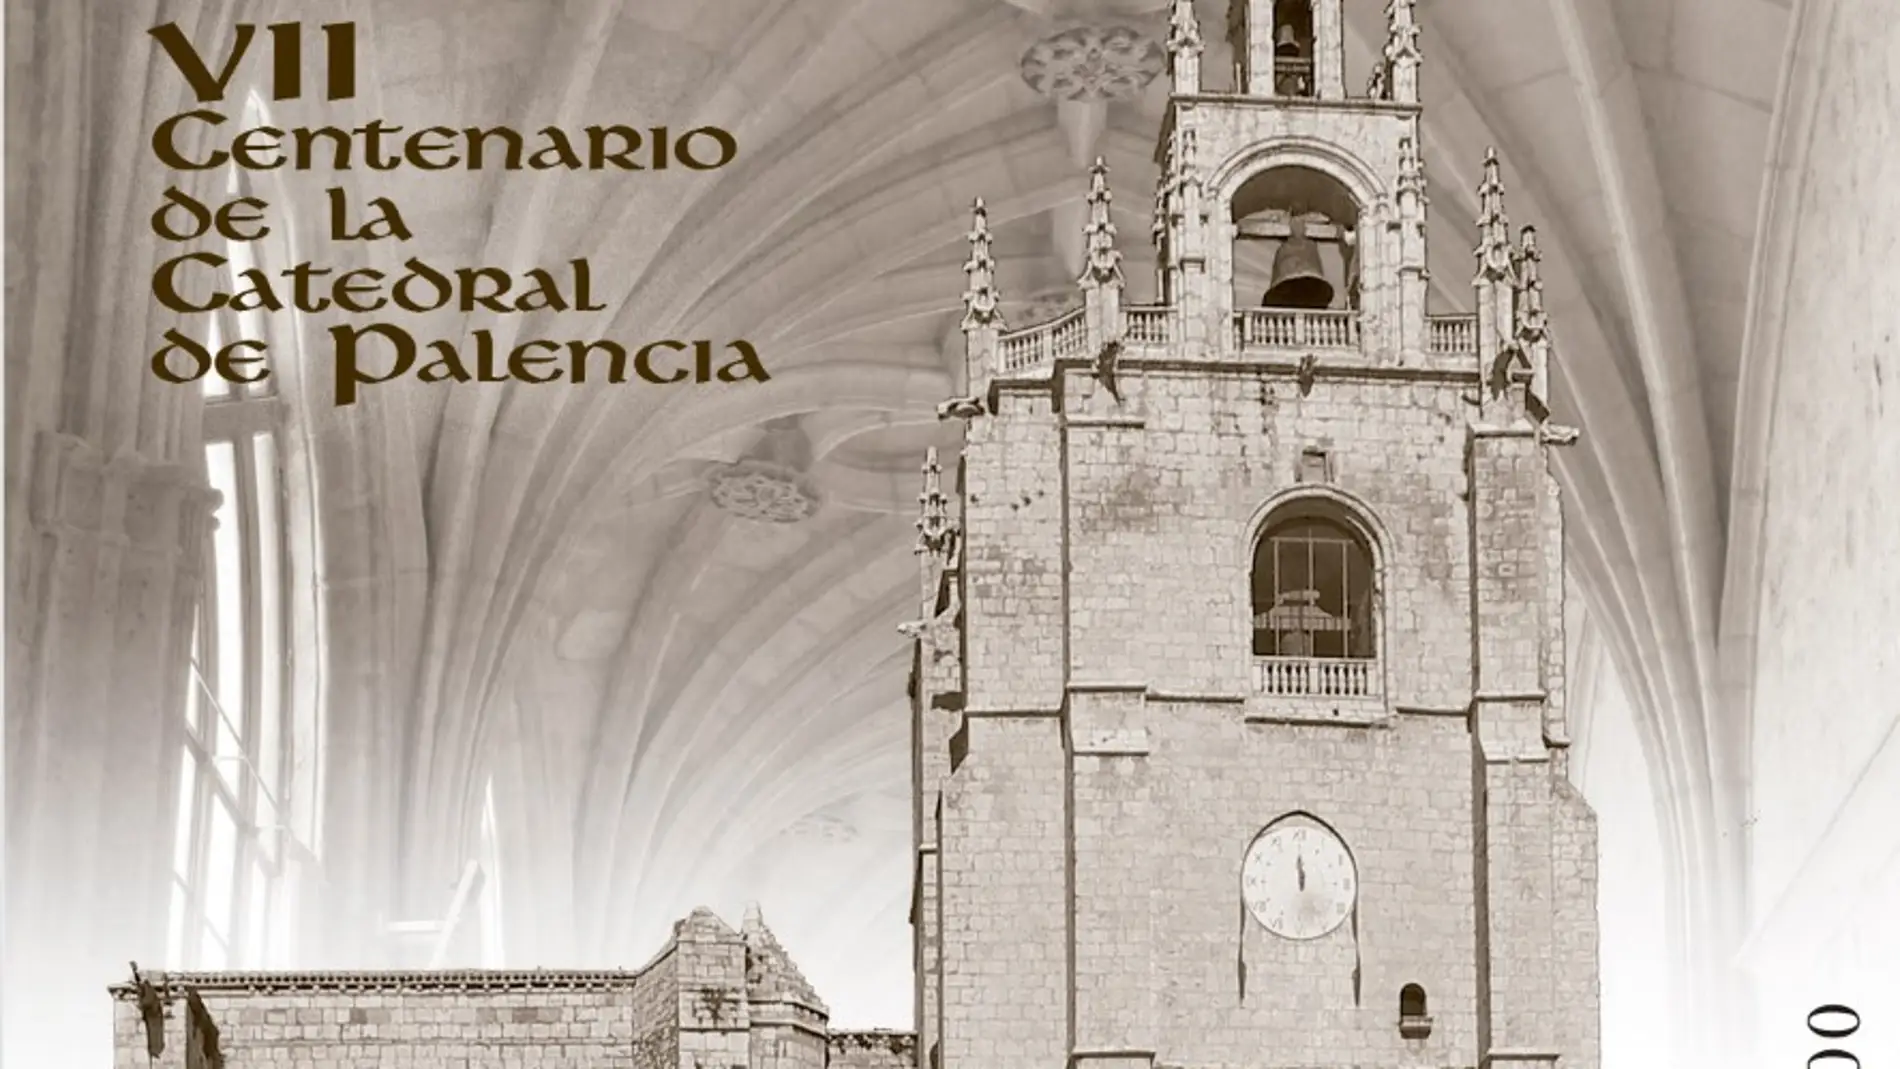 Correos emite un sello dedicado a la catedral de Palencia